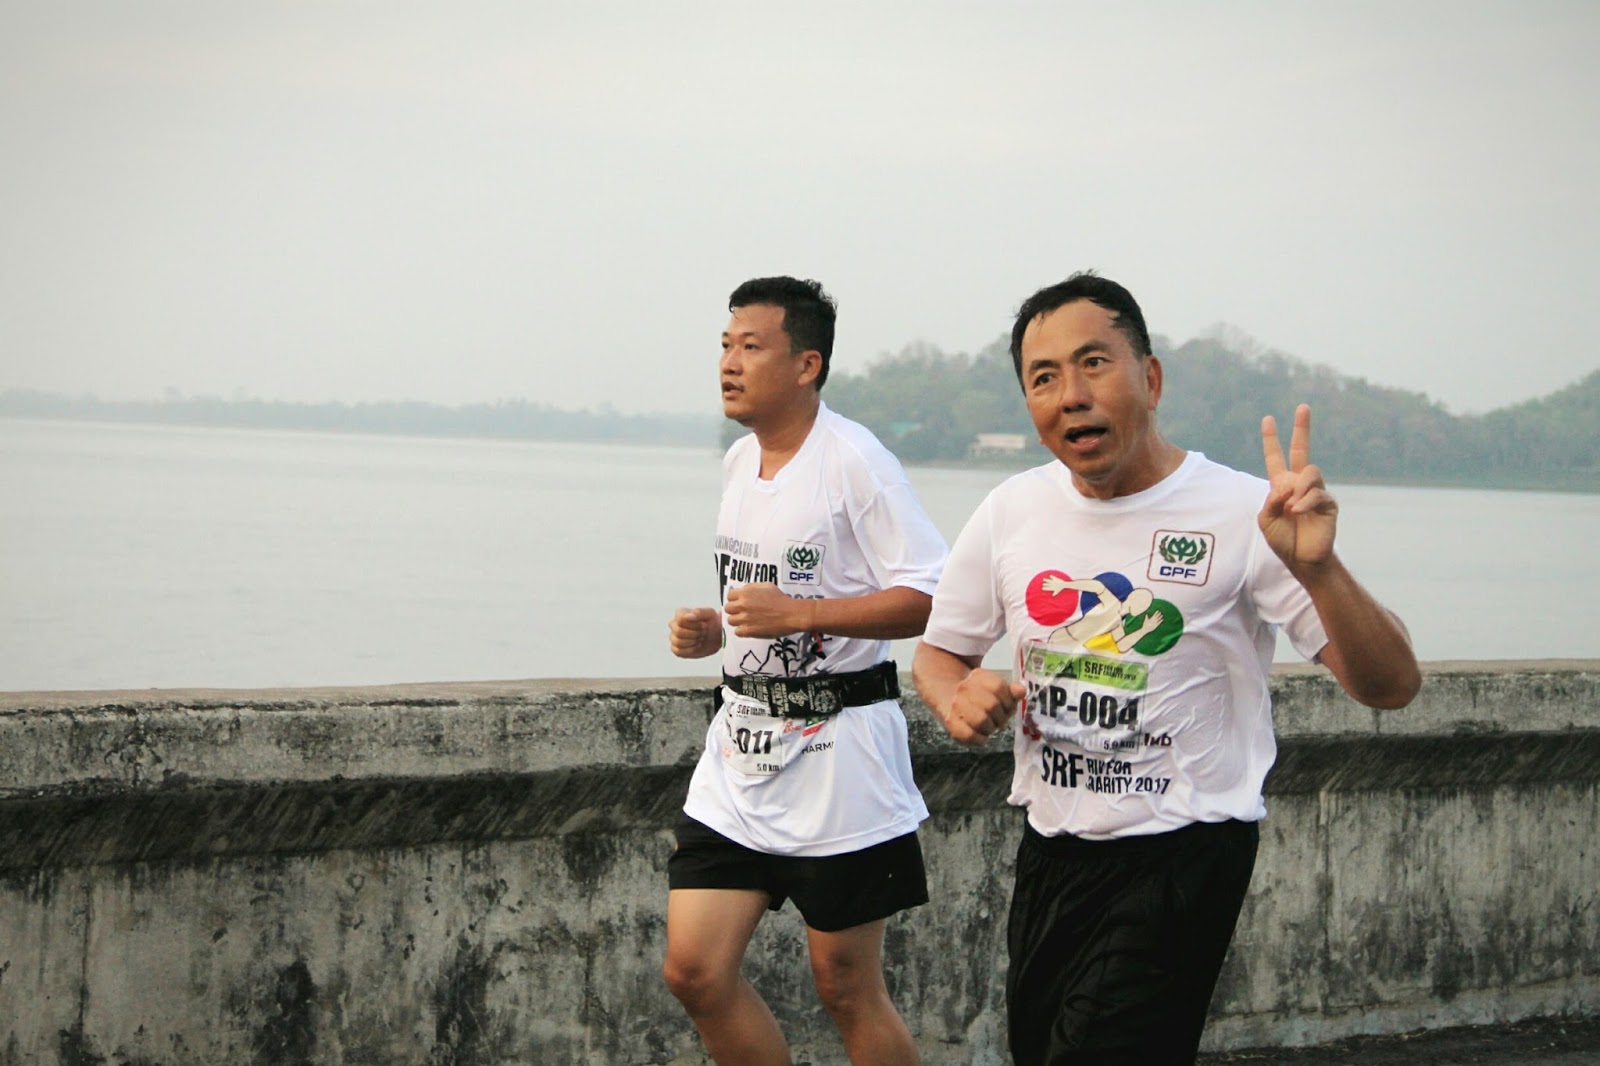 ซีพีเอฟ ชวนชาวชลบุรีวิ่งเพื่อการกุศล "CPF Running Club ...